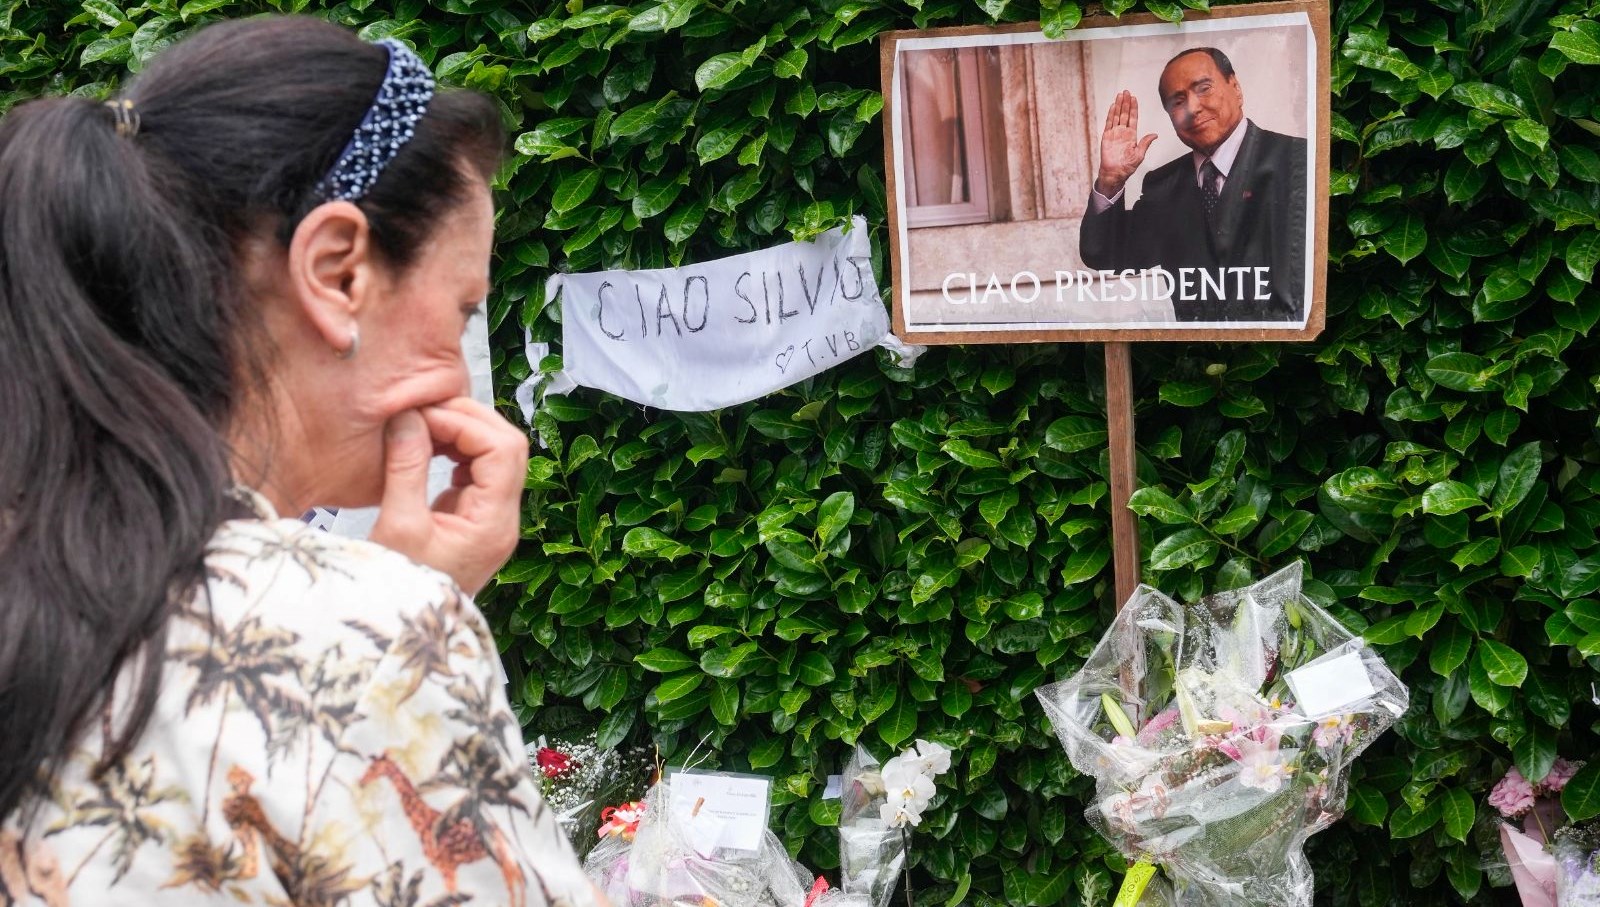 İtalya’da Berlusconi için “ulusal yas” kararı krize neden oldu